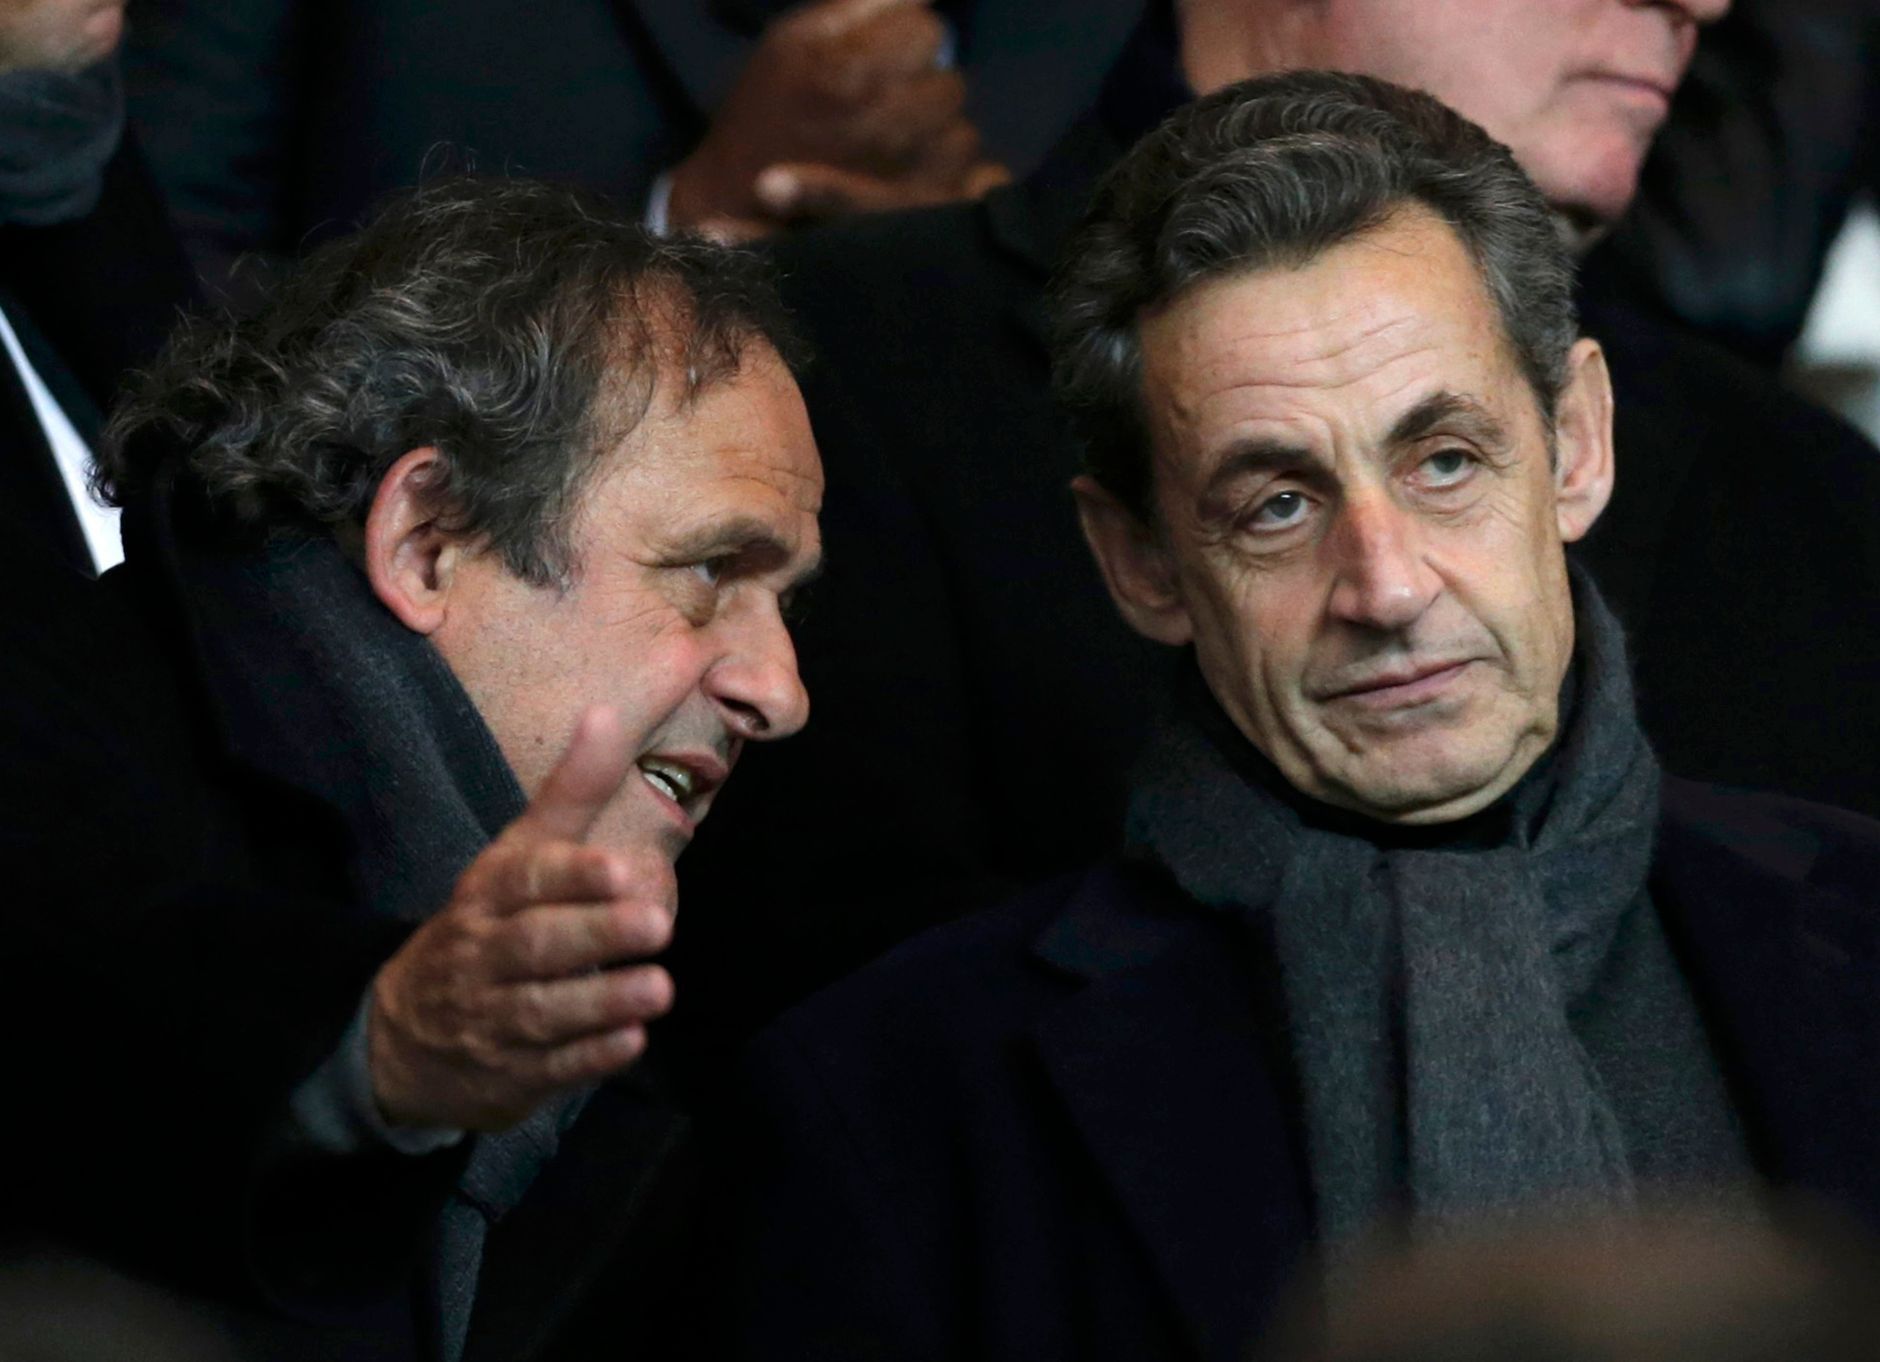 LM, PSG-Chelsea: prezident UEFA Michel Platini a bývalý francouzský prezident Nicolas Sarkozy